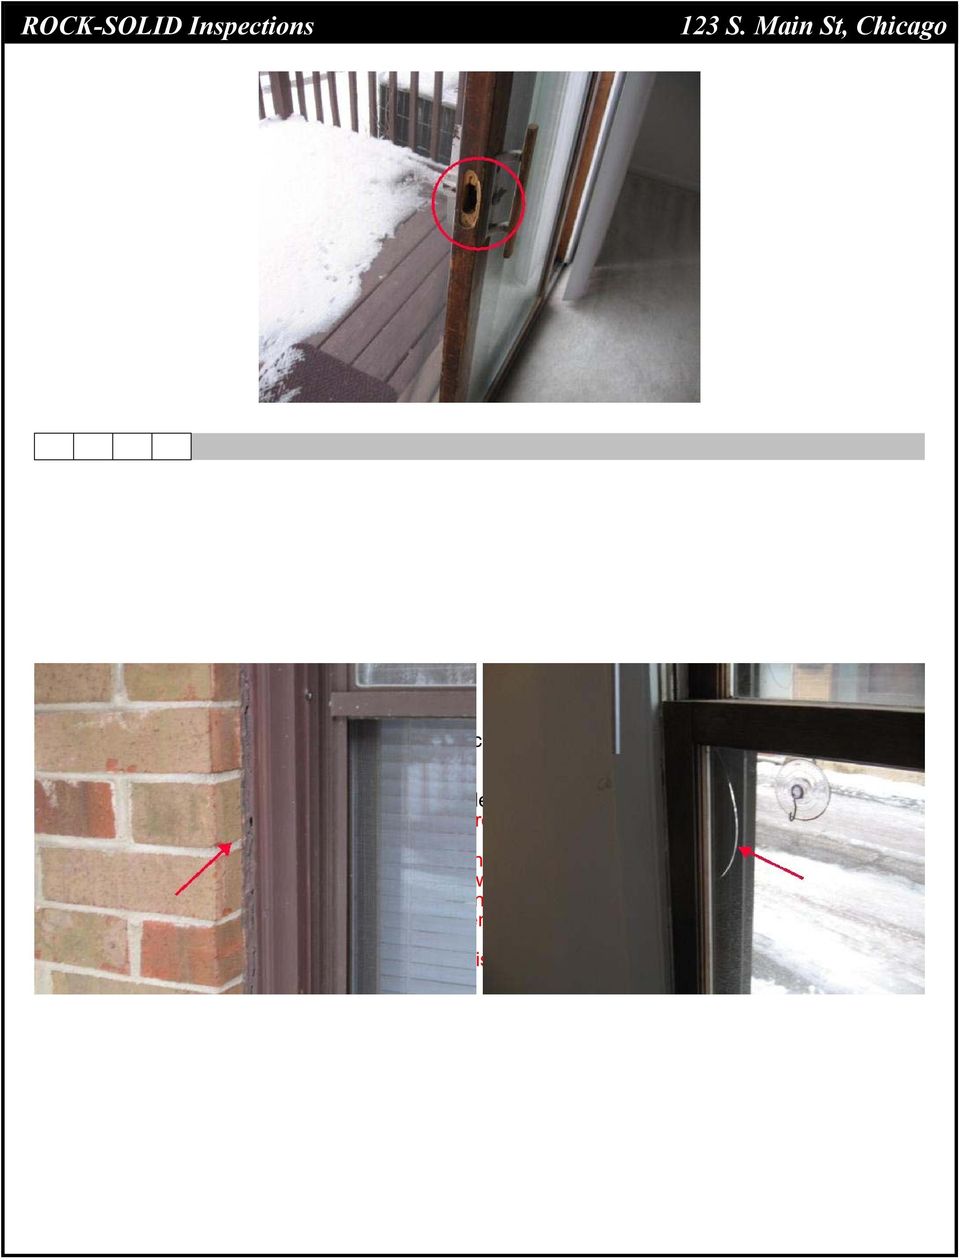 indicative of a thermal seal break. Window pane on living room window is cracked, repair needed.